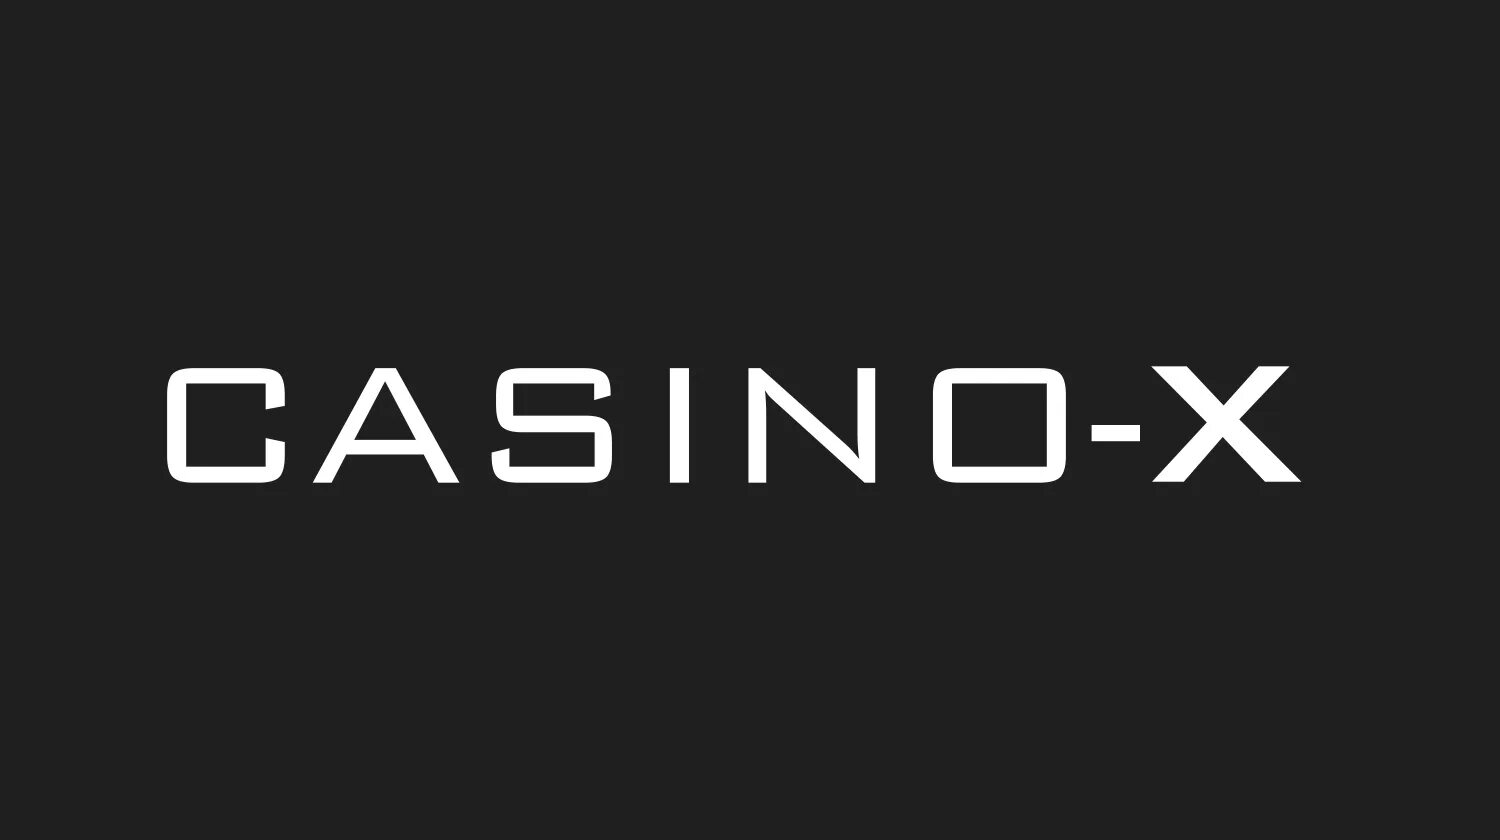 Казино Икс. Casino x logo. Izzi казино лого. Казино Икс войти. Casino x твиттер